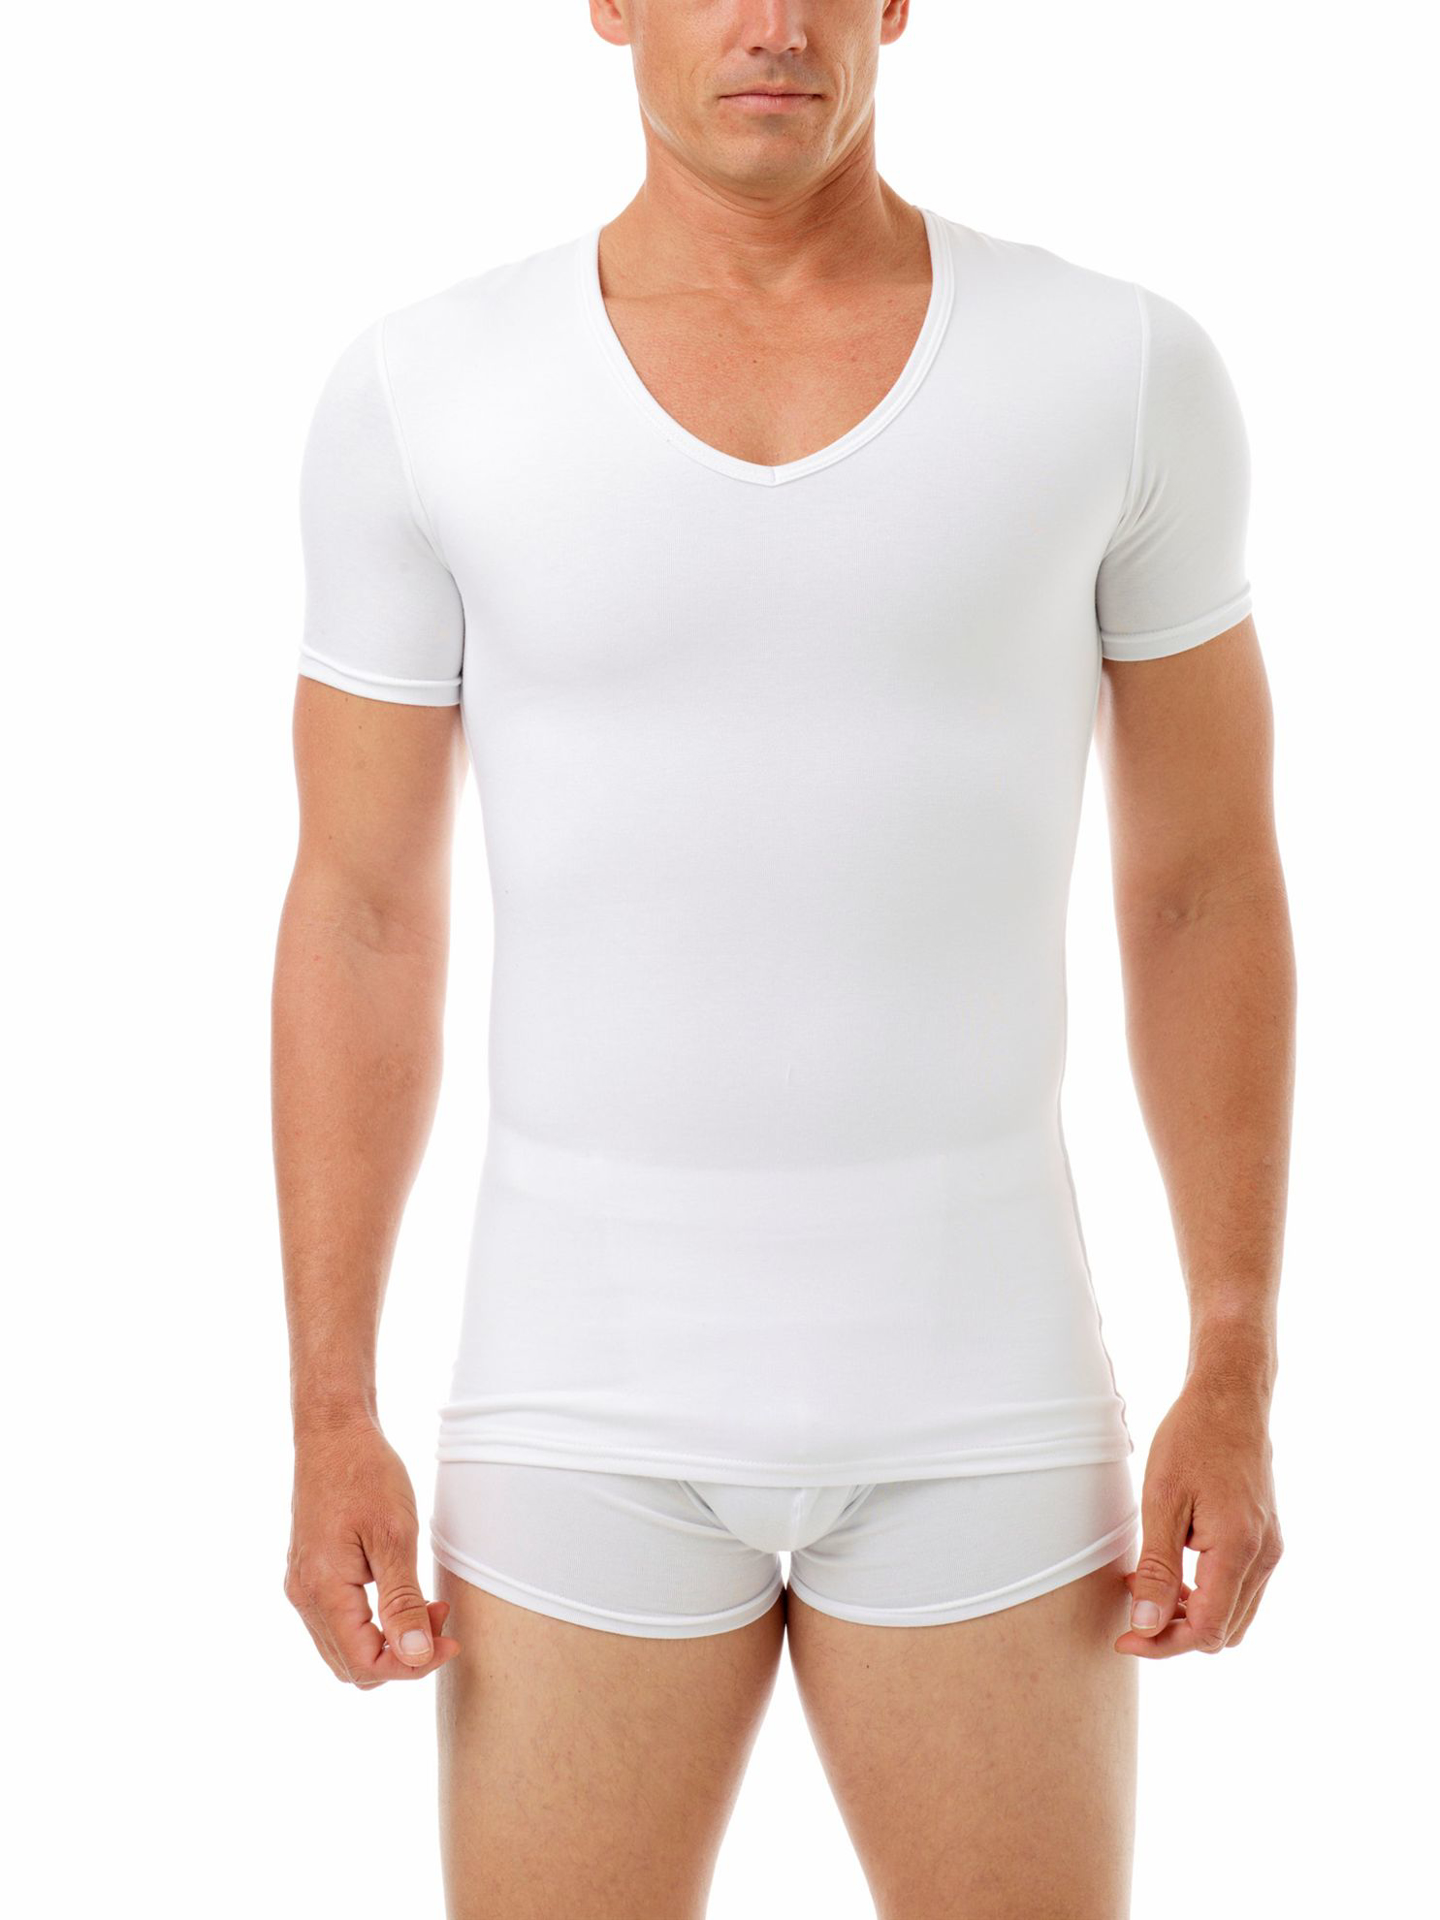 Men's Cotton Concealer V-neck T-shirt, Discover Now at Underworks